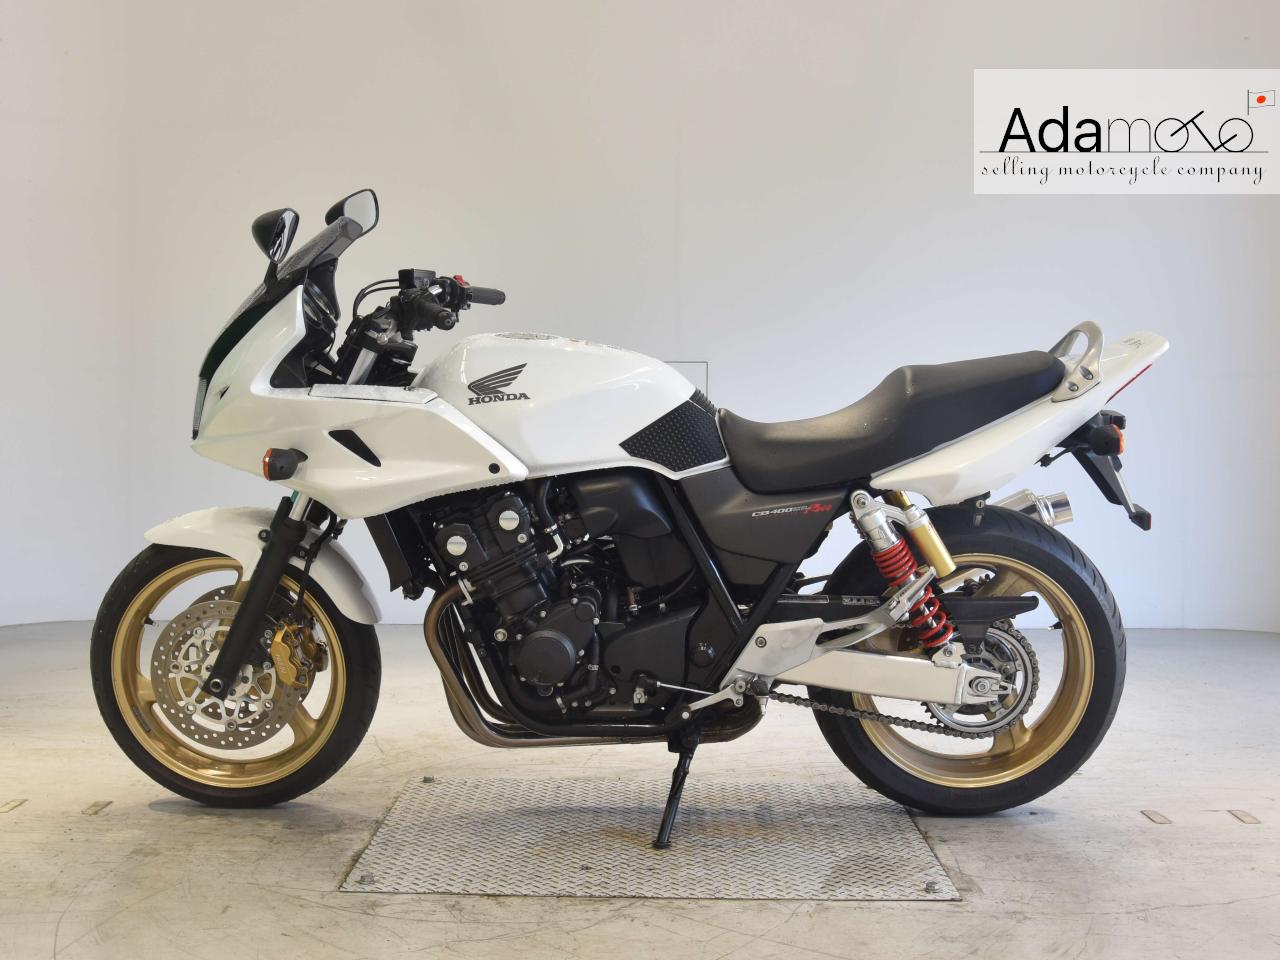 Honda CB400SFV BOL DOR 2 - Adamoto - Motorcycles from Japan